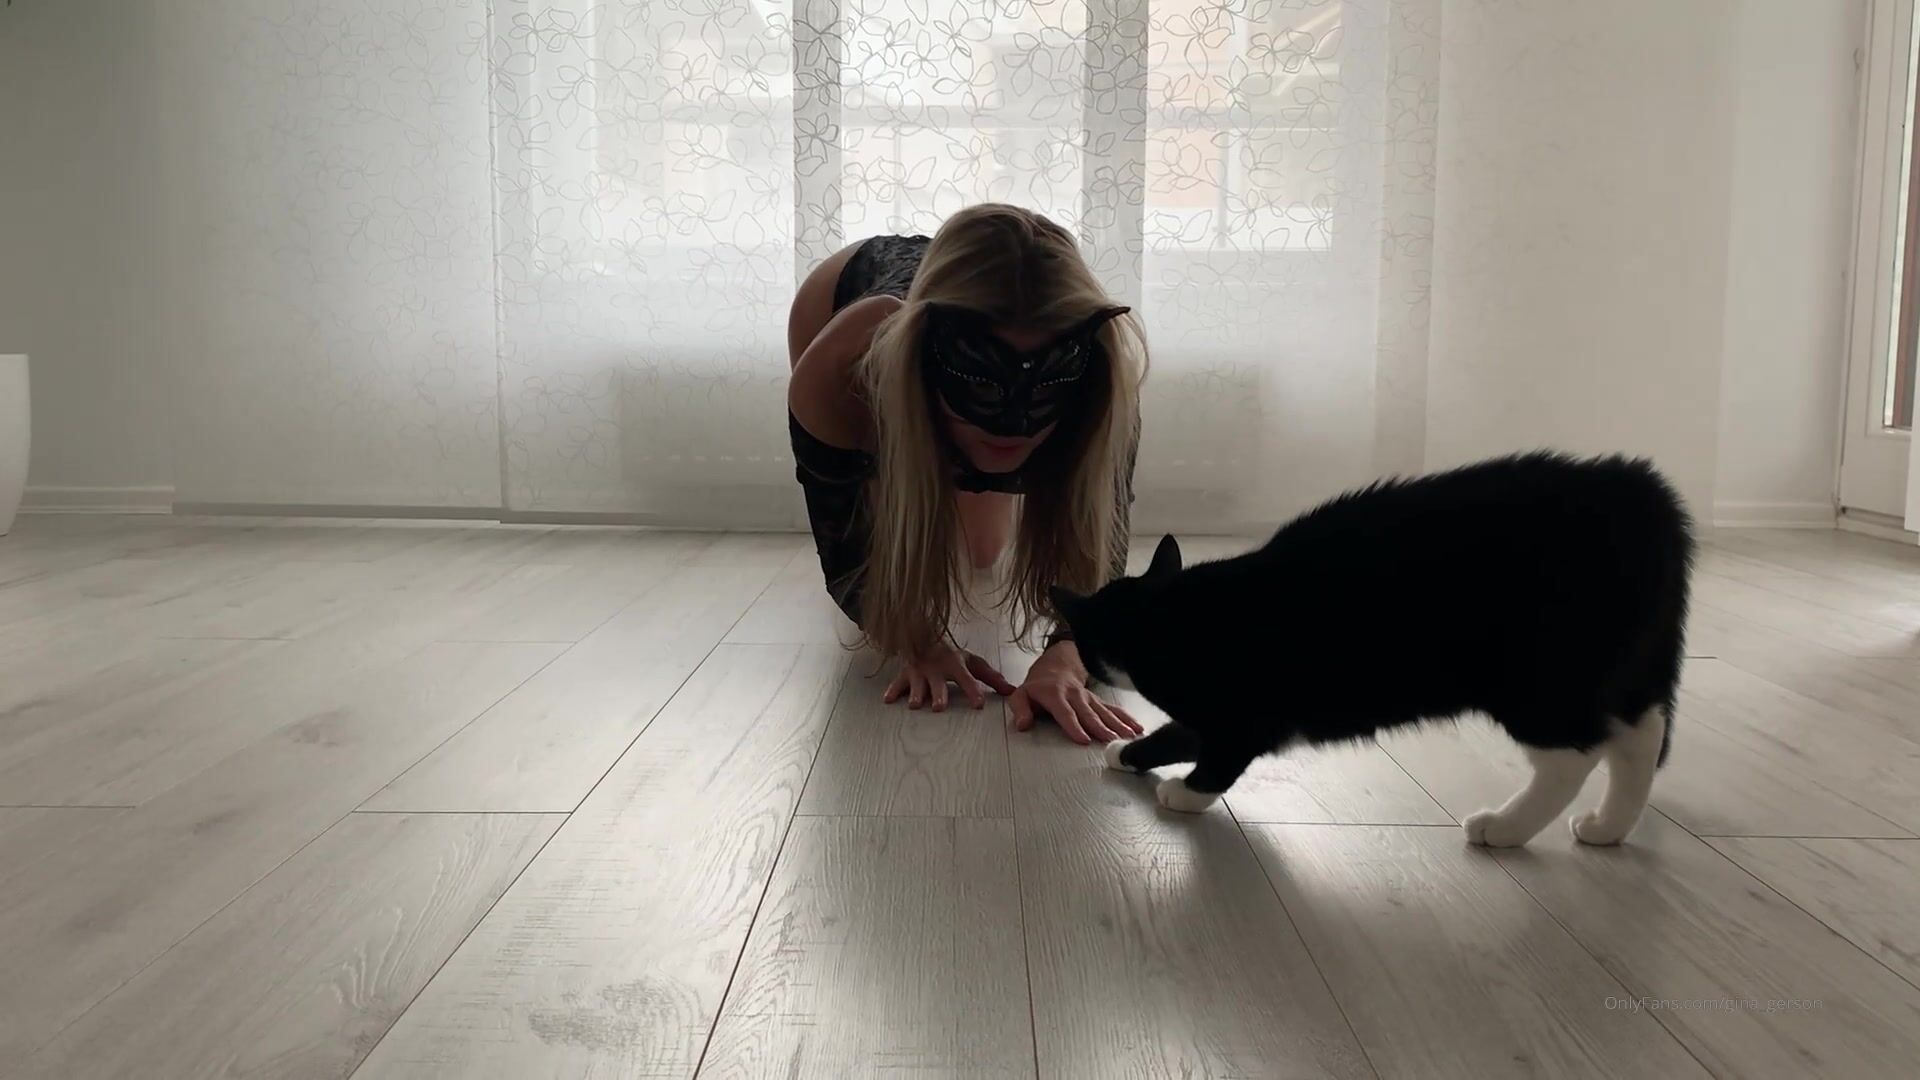 Xxx Dog 2019 - Gina gerson 09 11 2019 83601847 cat fight seduction onlyfans xxx porn videos